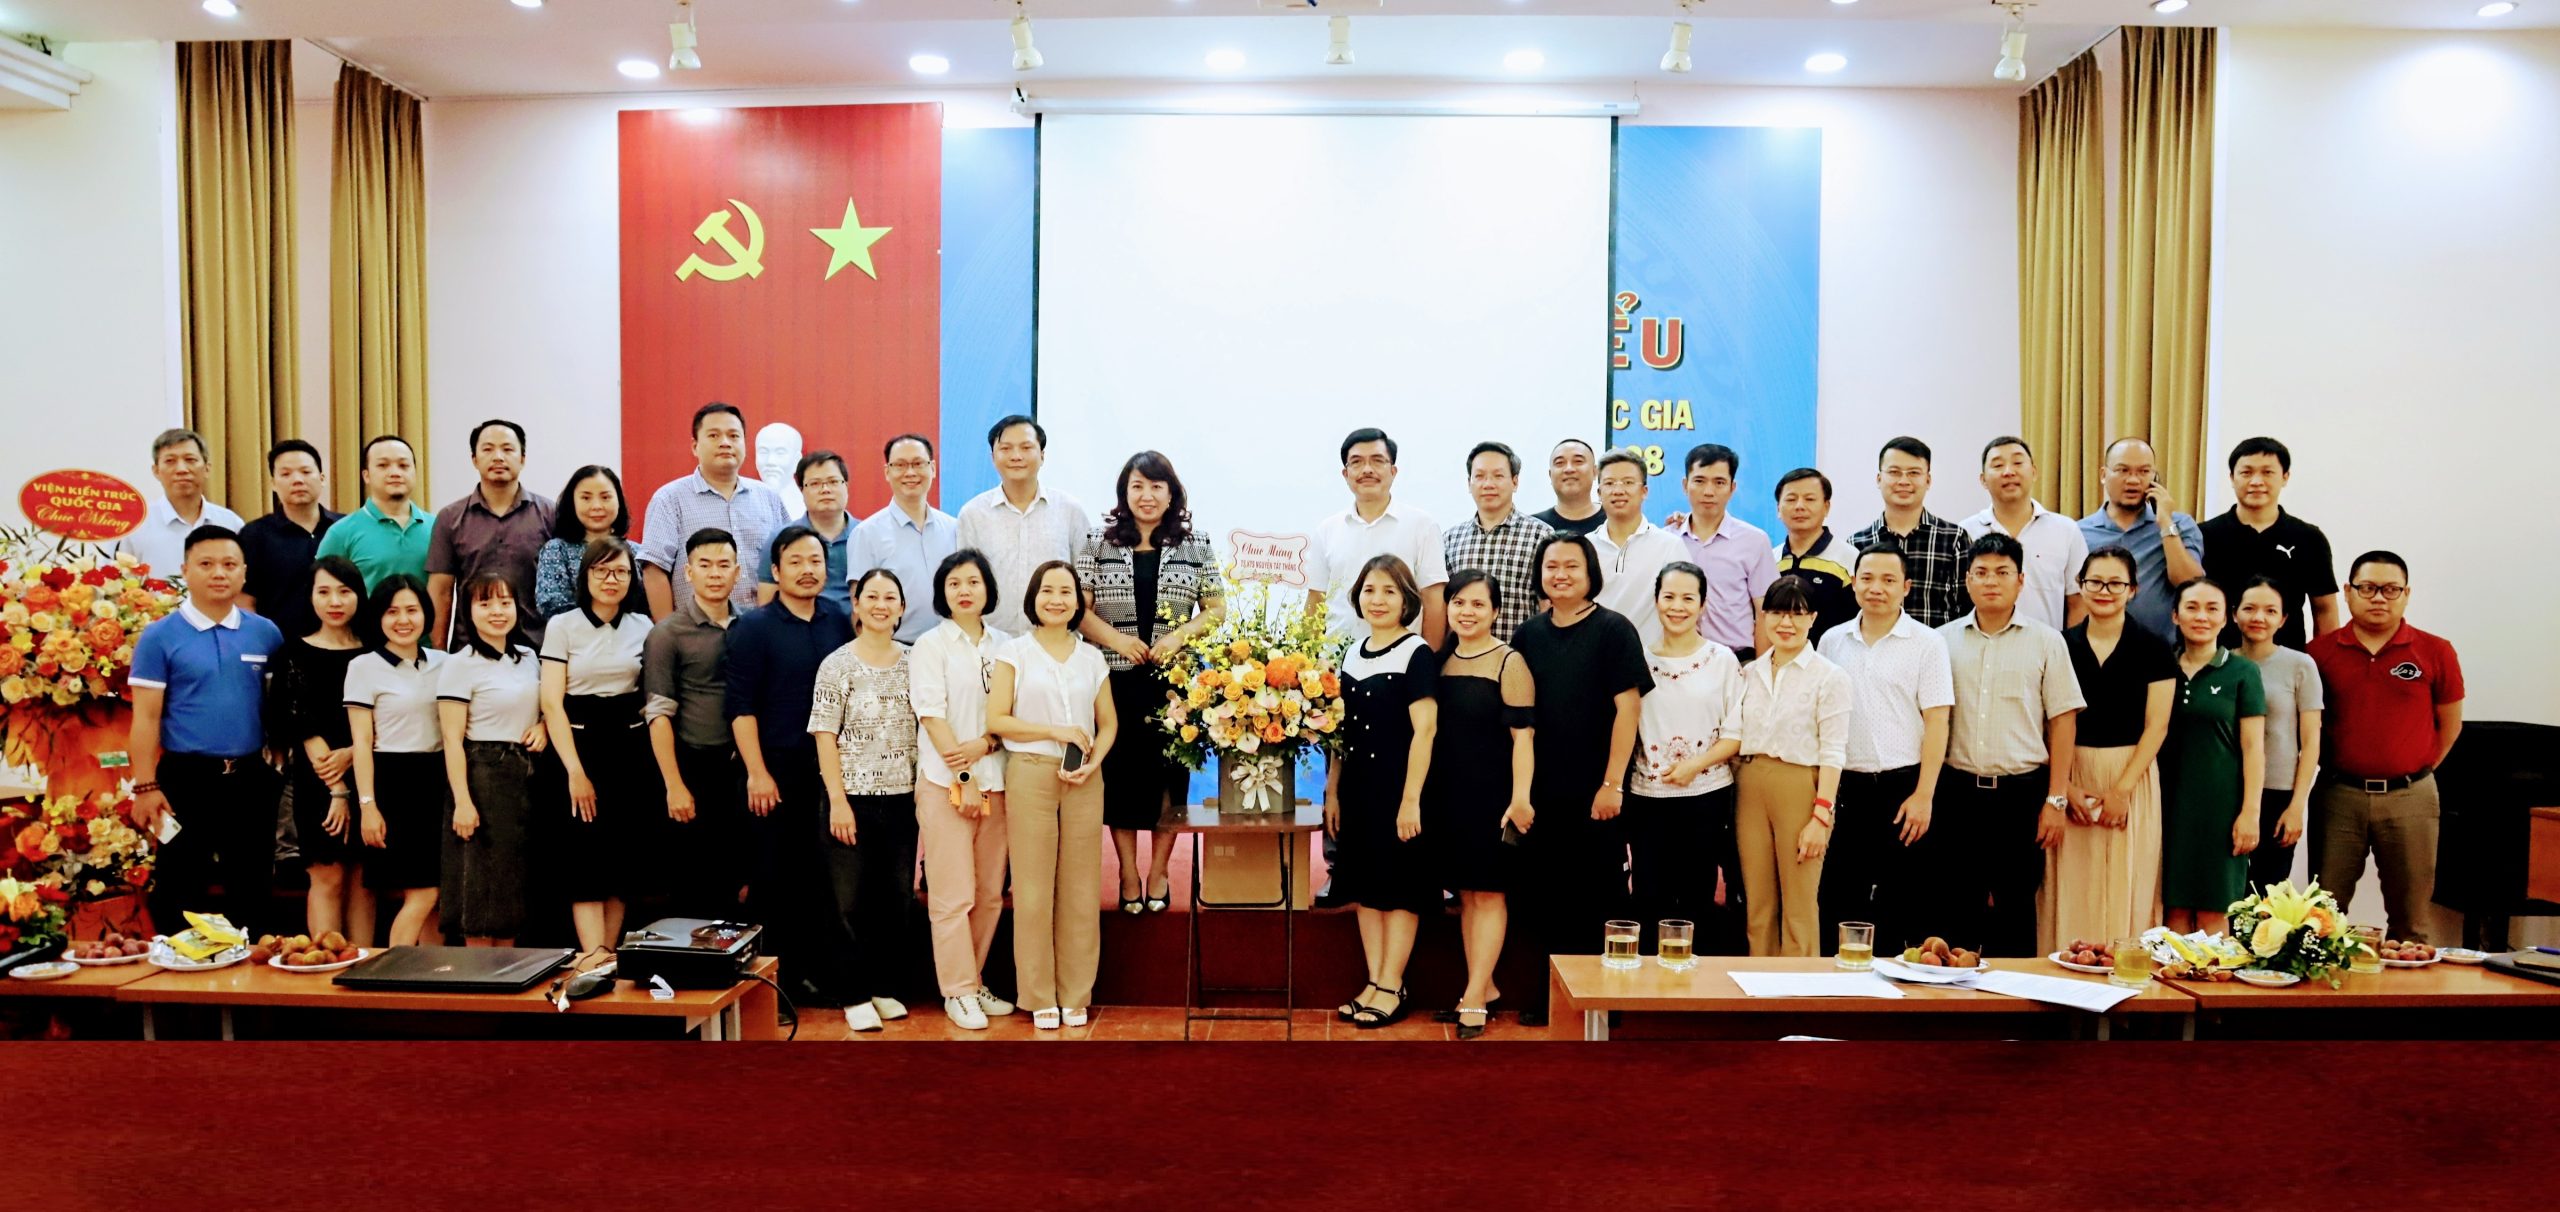 Tọa đàm hưởng ứng chào mừng kỷ niệm 75 năm thành lập Hội Kiến trúc sư Việt Nam (1948-2023)